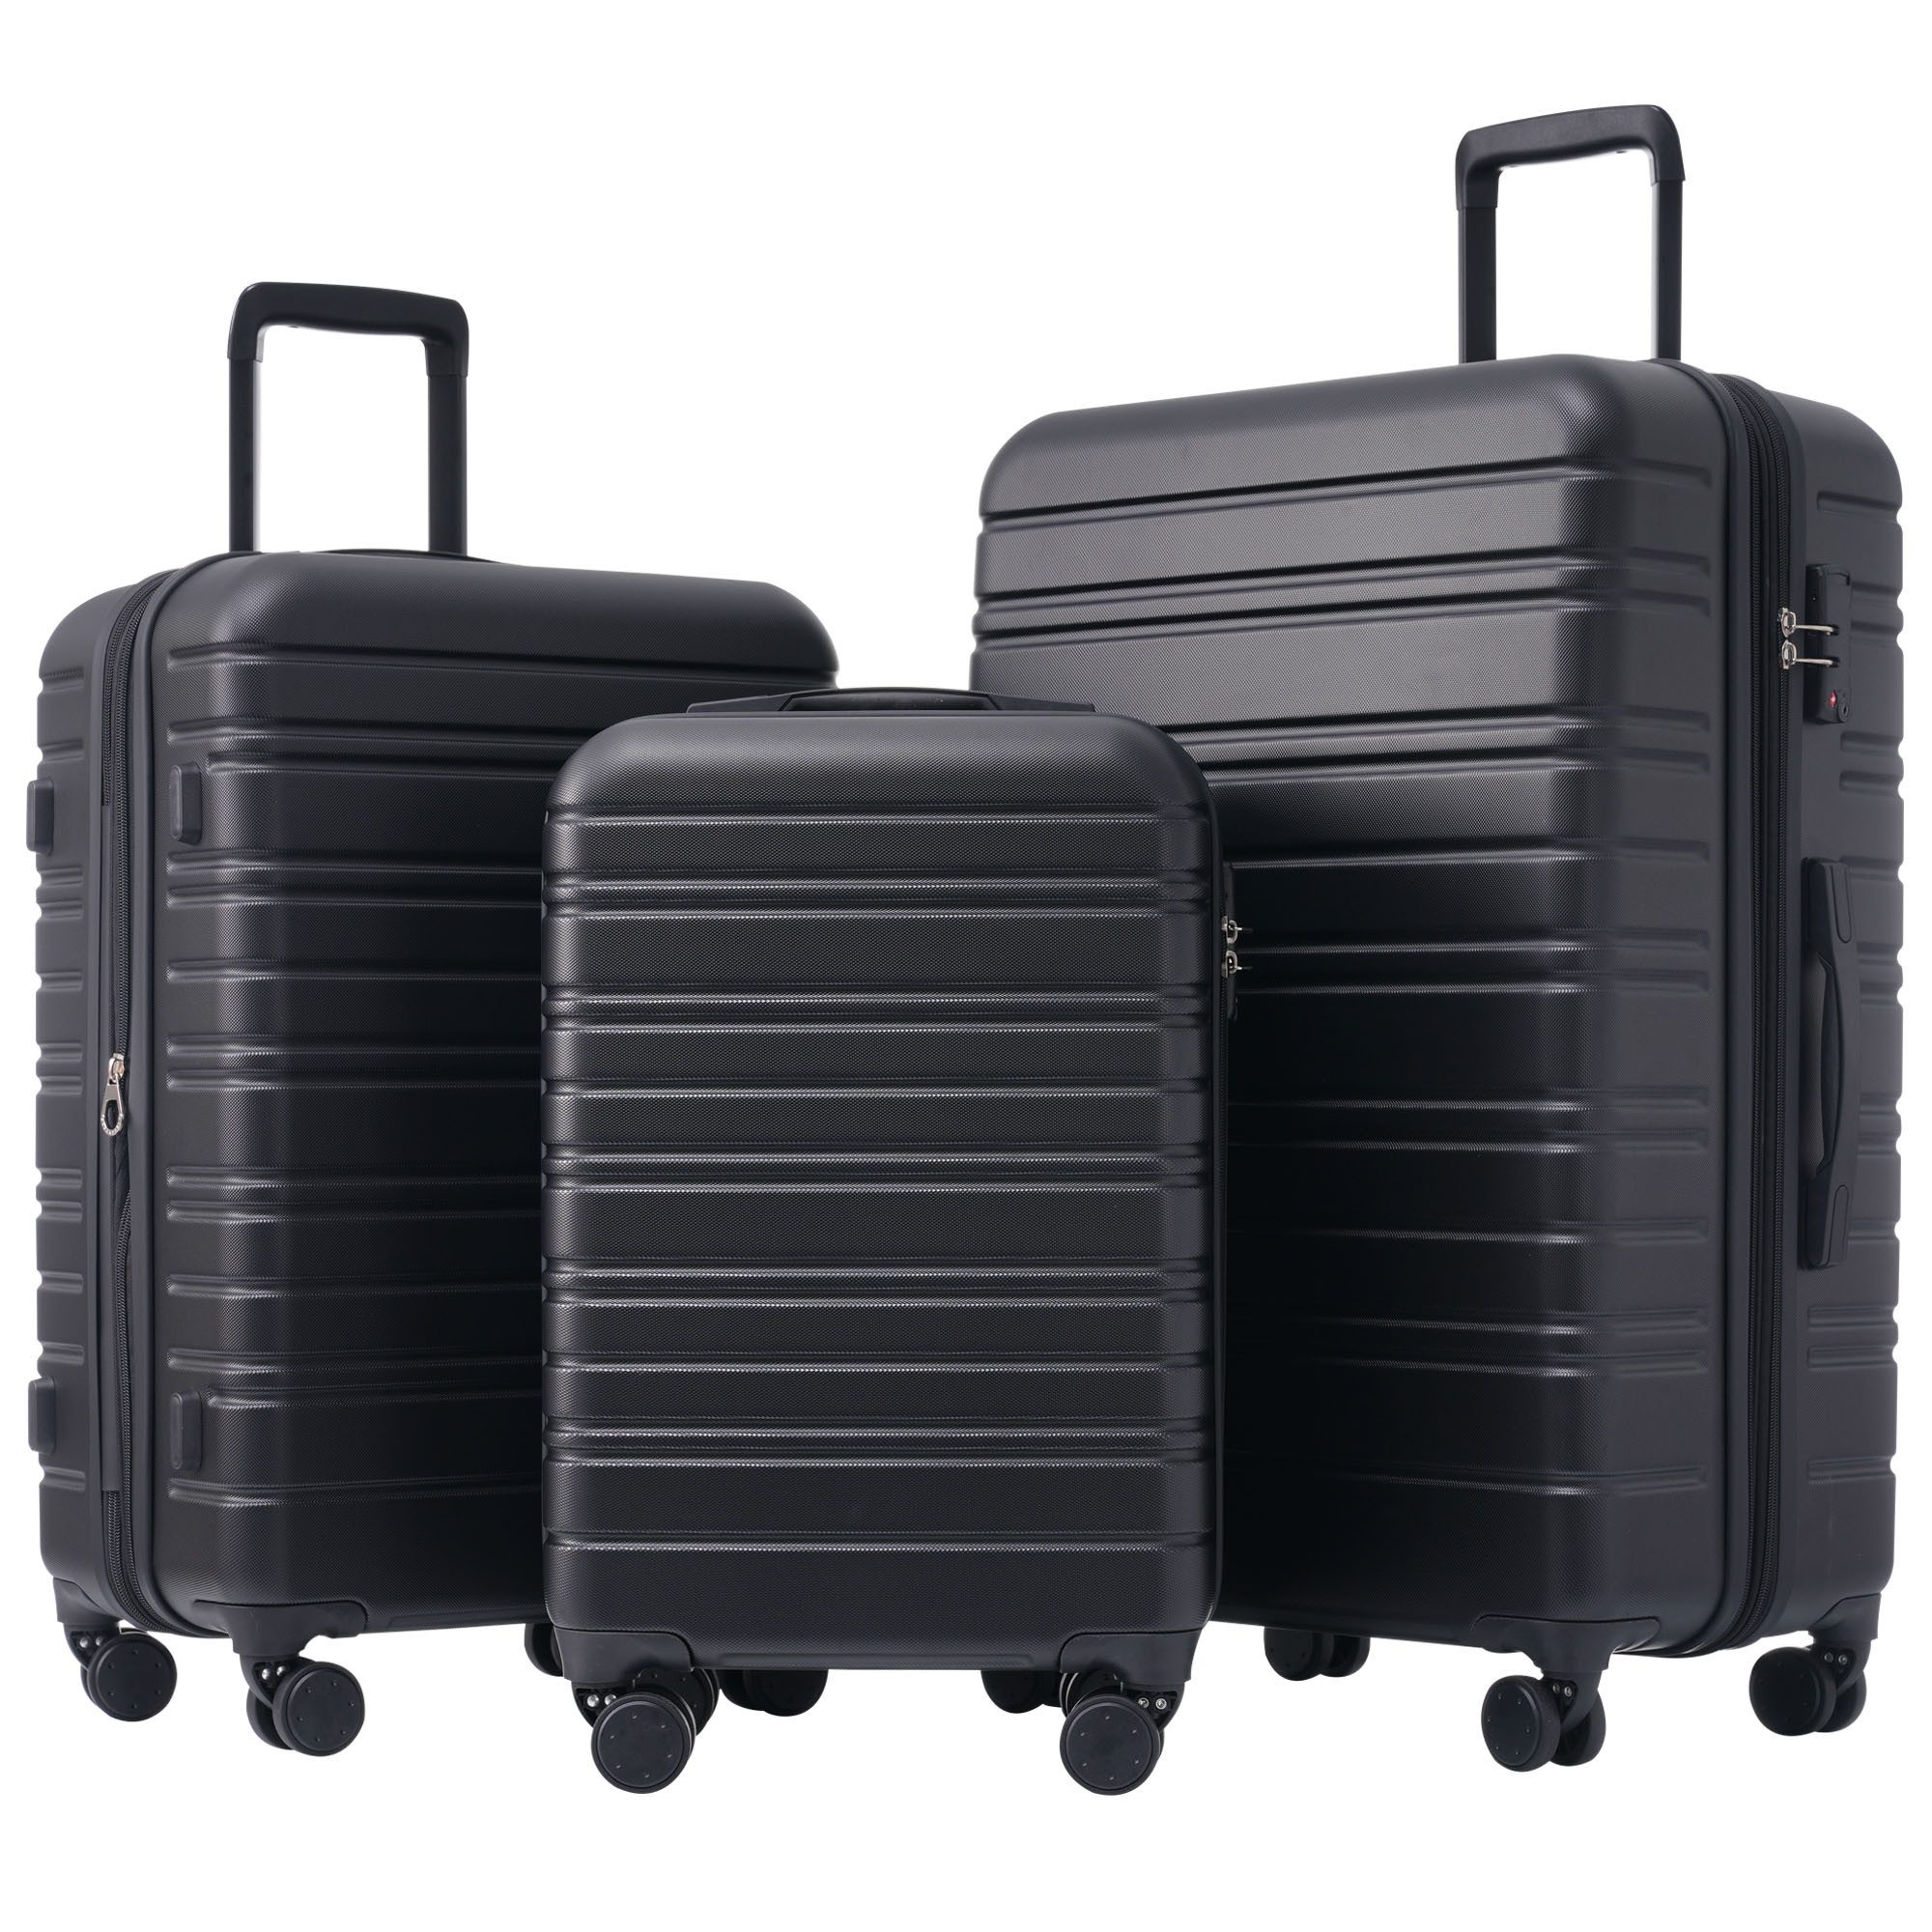 Blusmart Kofferset Hartschalenkoffer Set 3-teilig Trolley Set, 4 Rollen, (Hochwertiges ABS-Kofferset, 1 tlg., Robust, leicht und stilvoll), 360° Rollen, mit Zahlenschloss